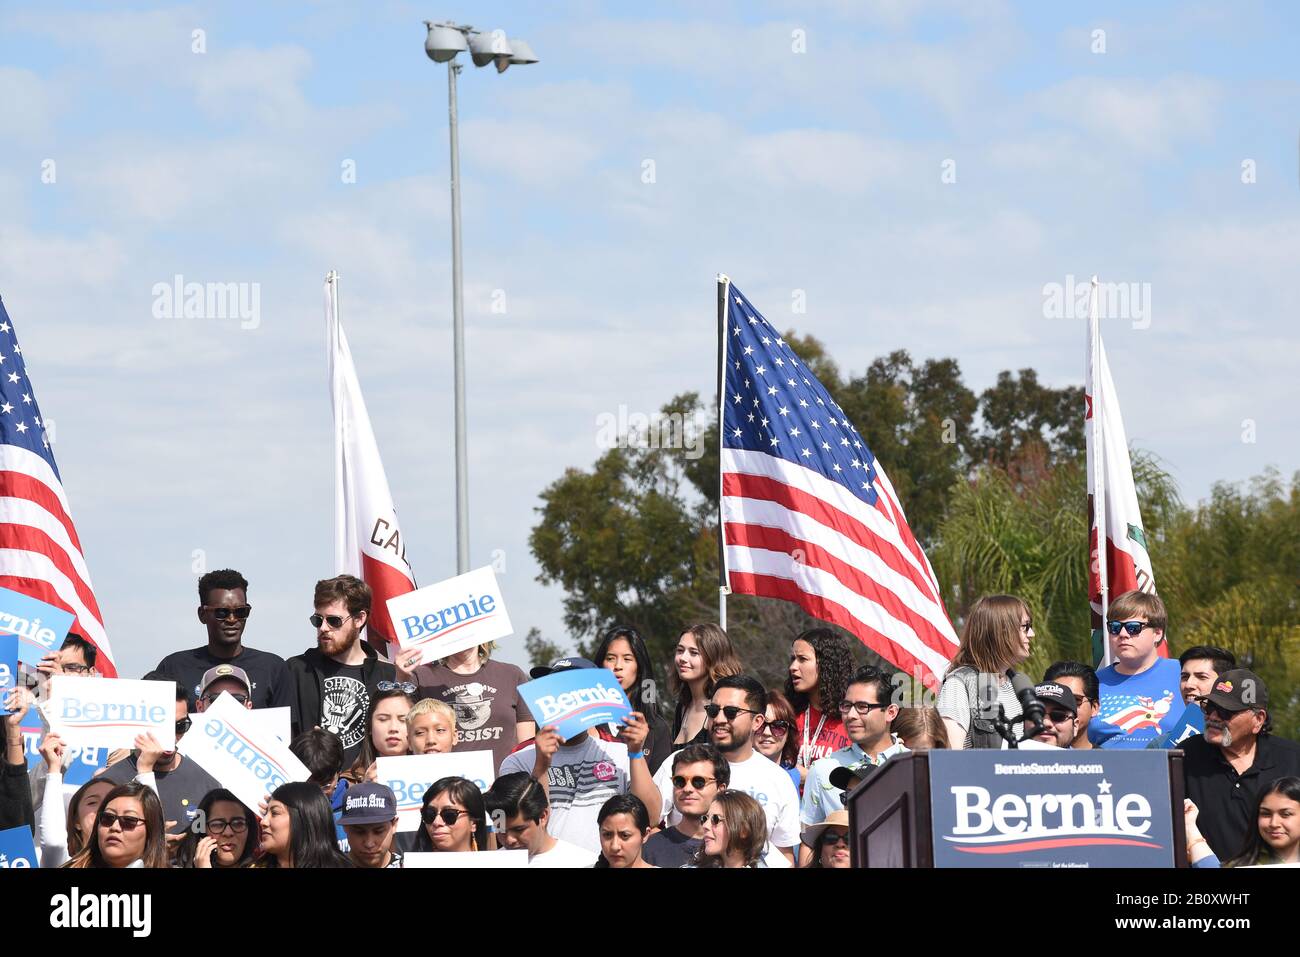 Santa ANA, KALIFORNIEN - 21. FEBRUAR 2020: Bernie Sanders Rally. Befürworter auf der Bühne, die auf die Ankunft des Präsidentschaftskandidaten warten. Stockfoto